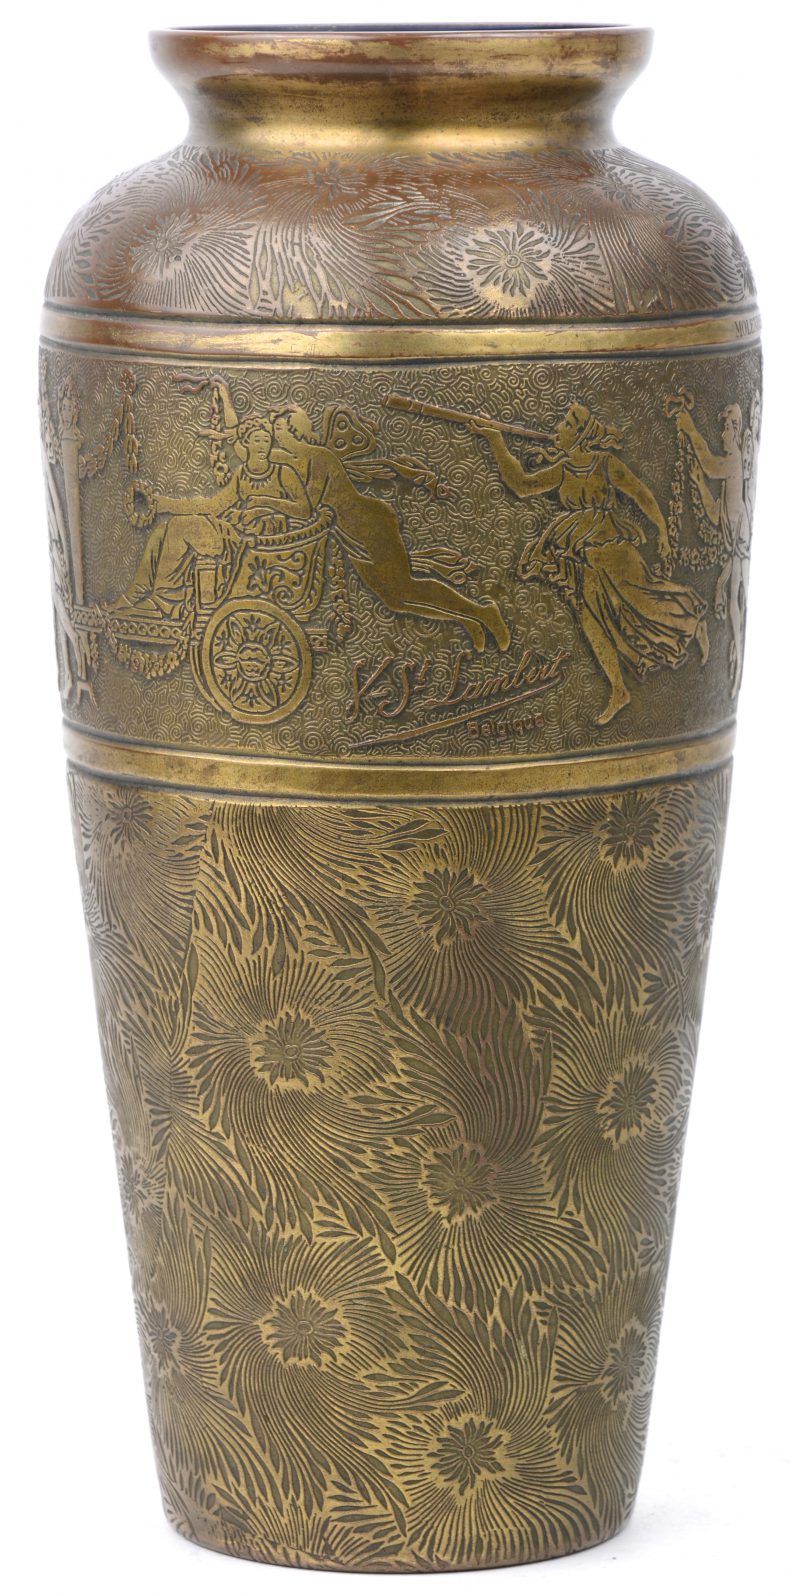 Een vaas van geel koper met een gegraveerd decor. In de fries een classicistische voorstelling en het opschrift “Molenbeek - Attractions à son président d’honneur 12 avril 1924. Binnenin blauw geëmailleerd.